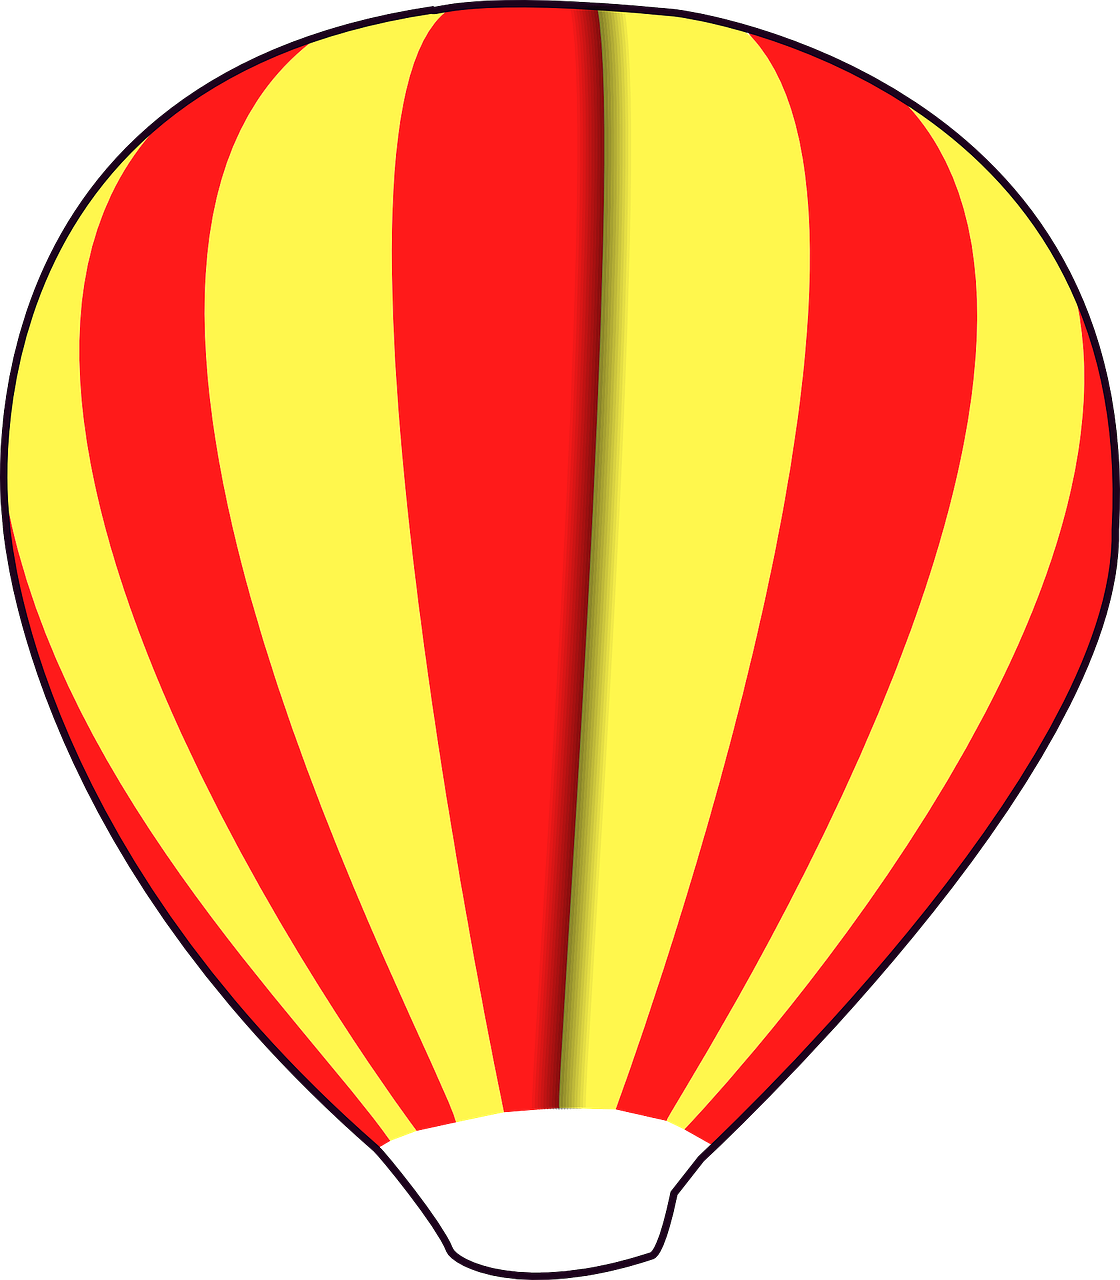 hot air ballon fly ballon free photo